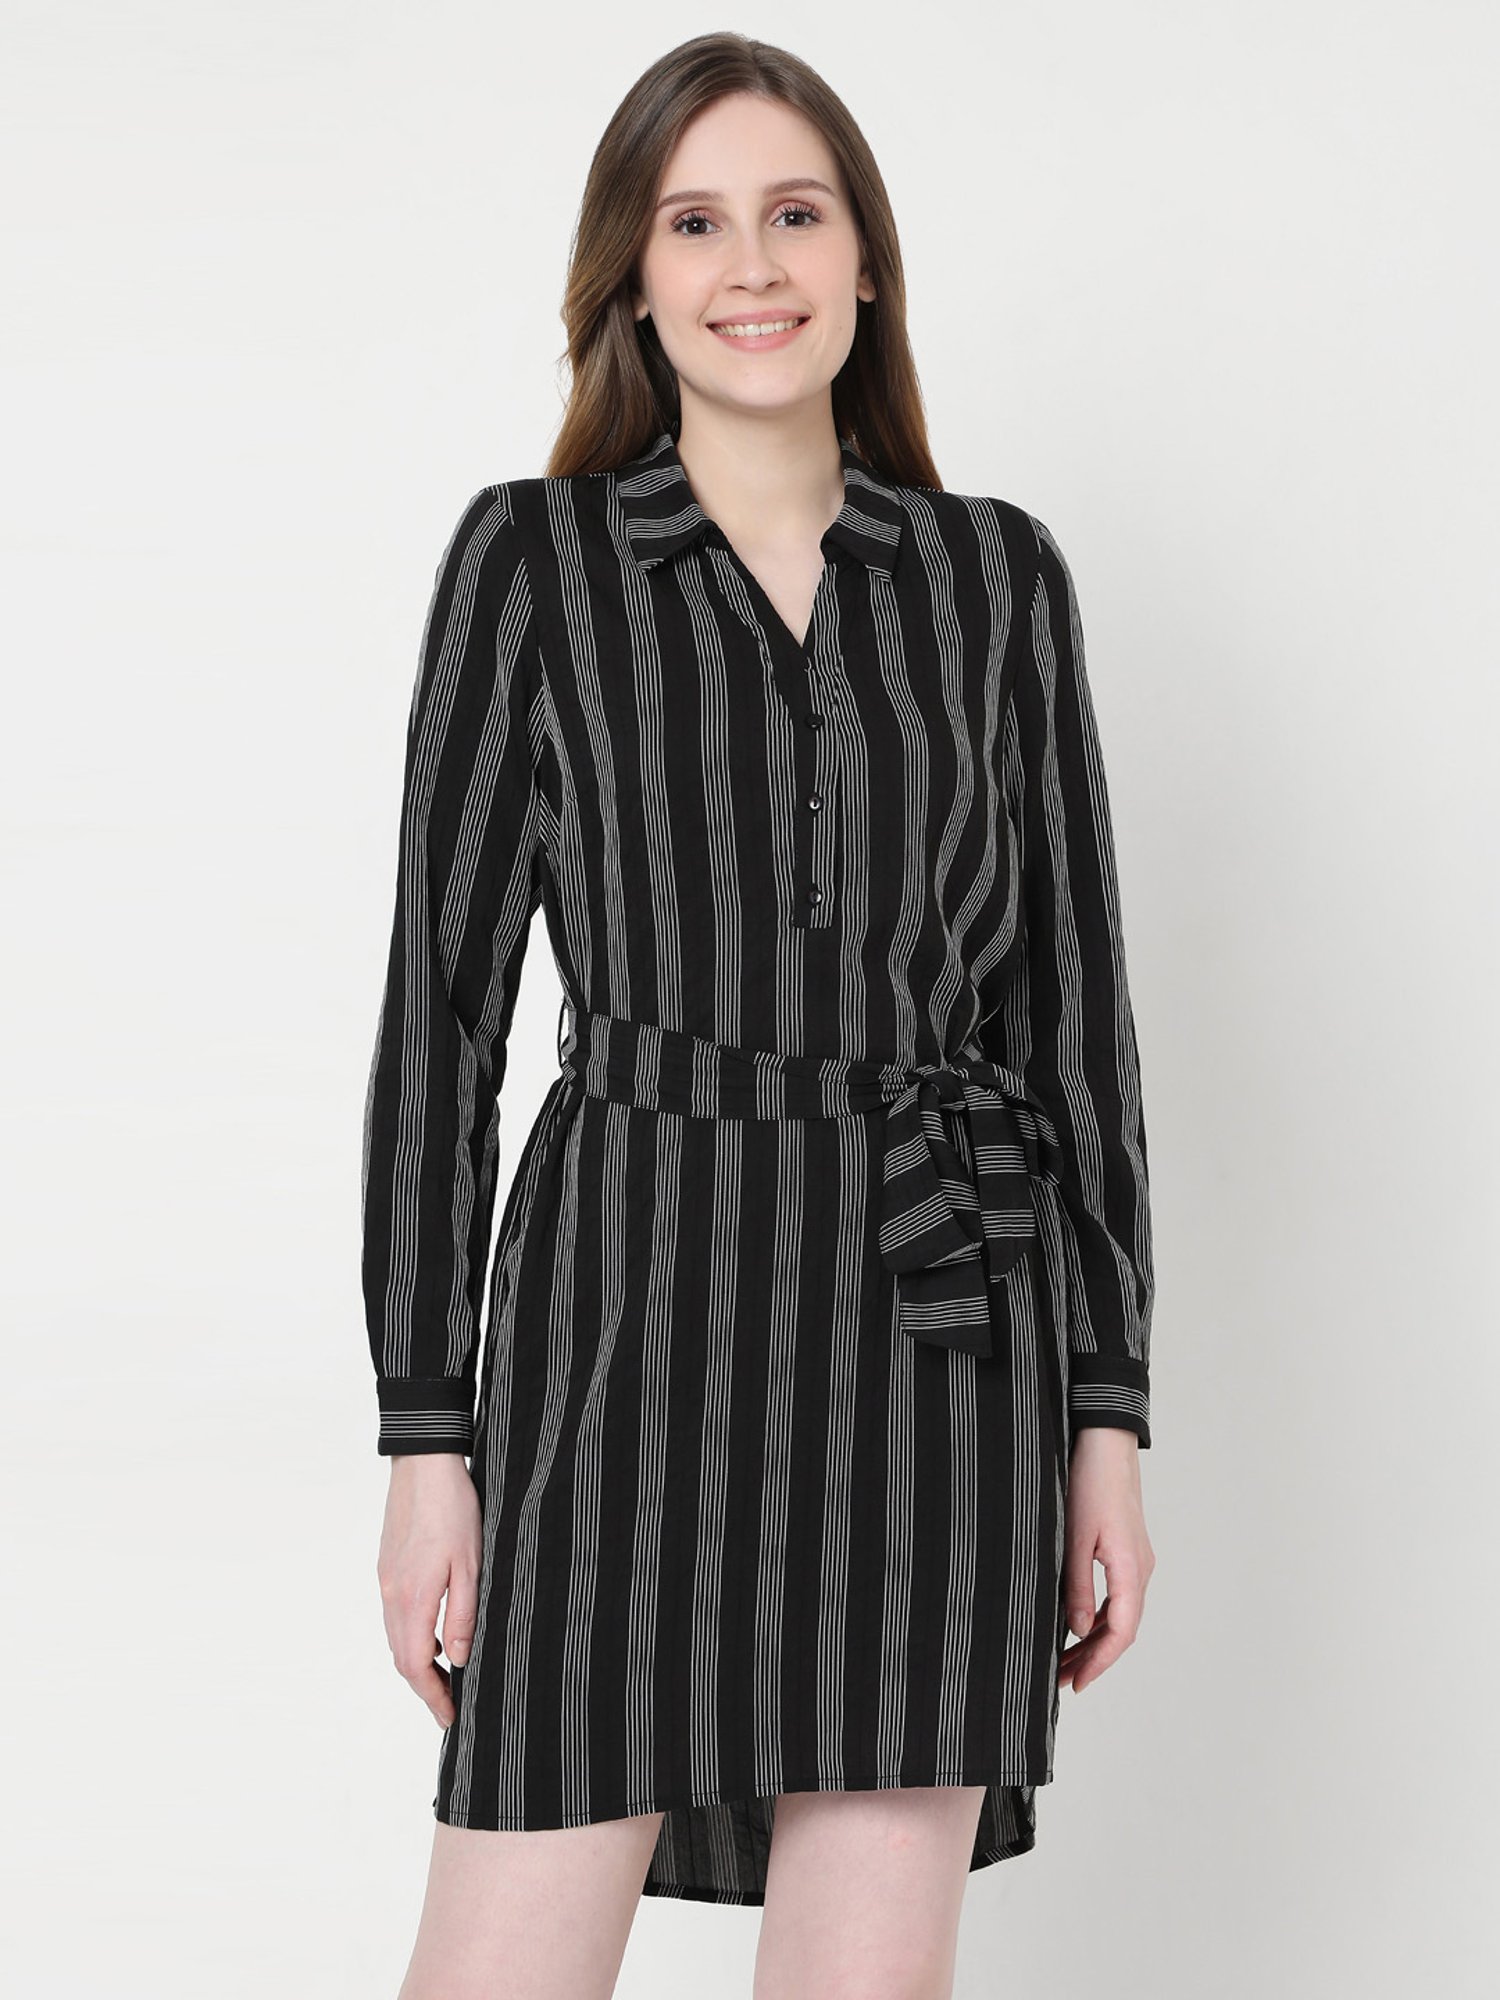 Moda Black Striped Shift Dress for Women Online @ Tata CLiQ